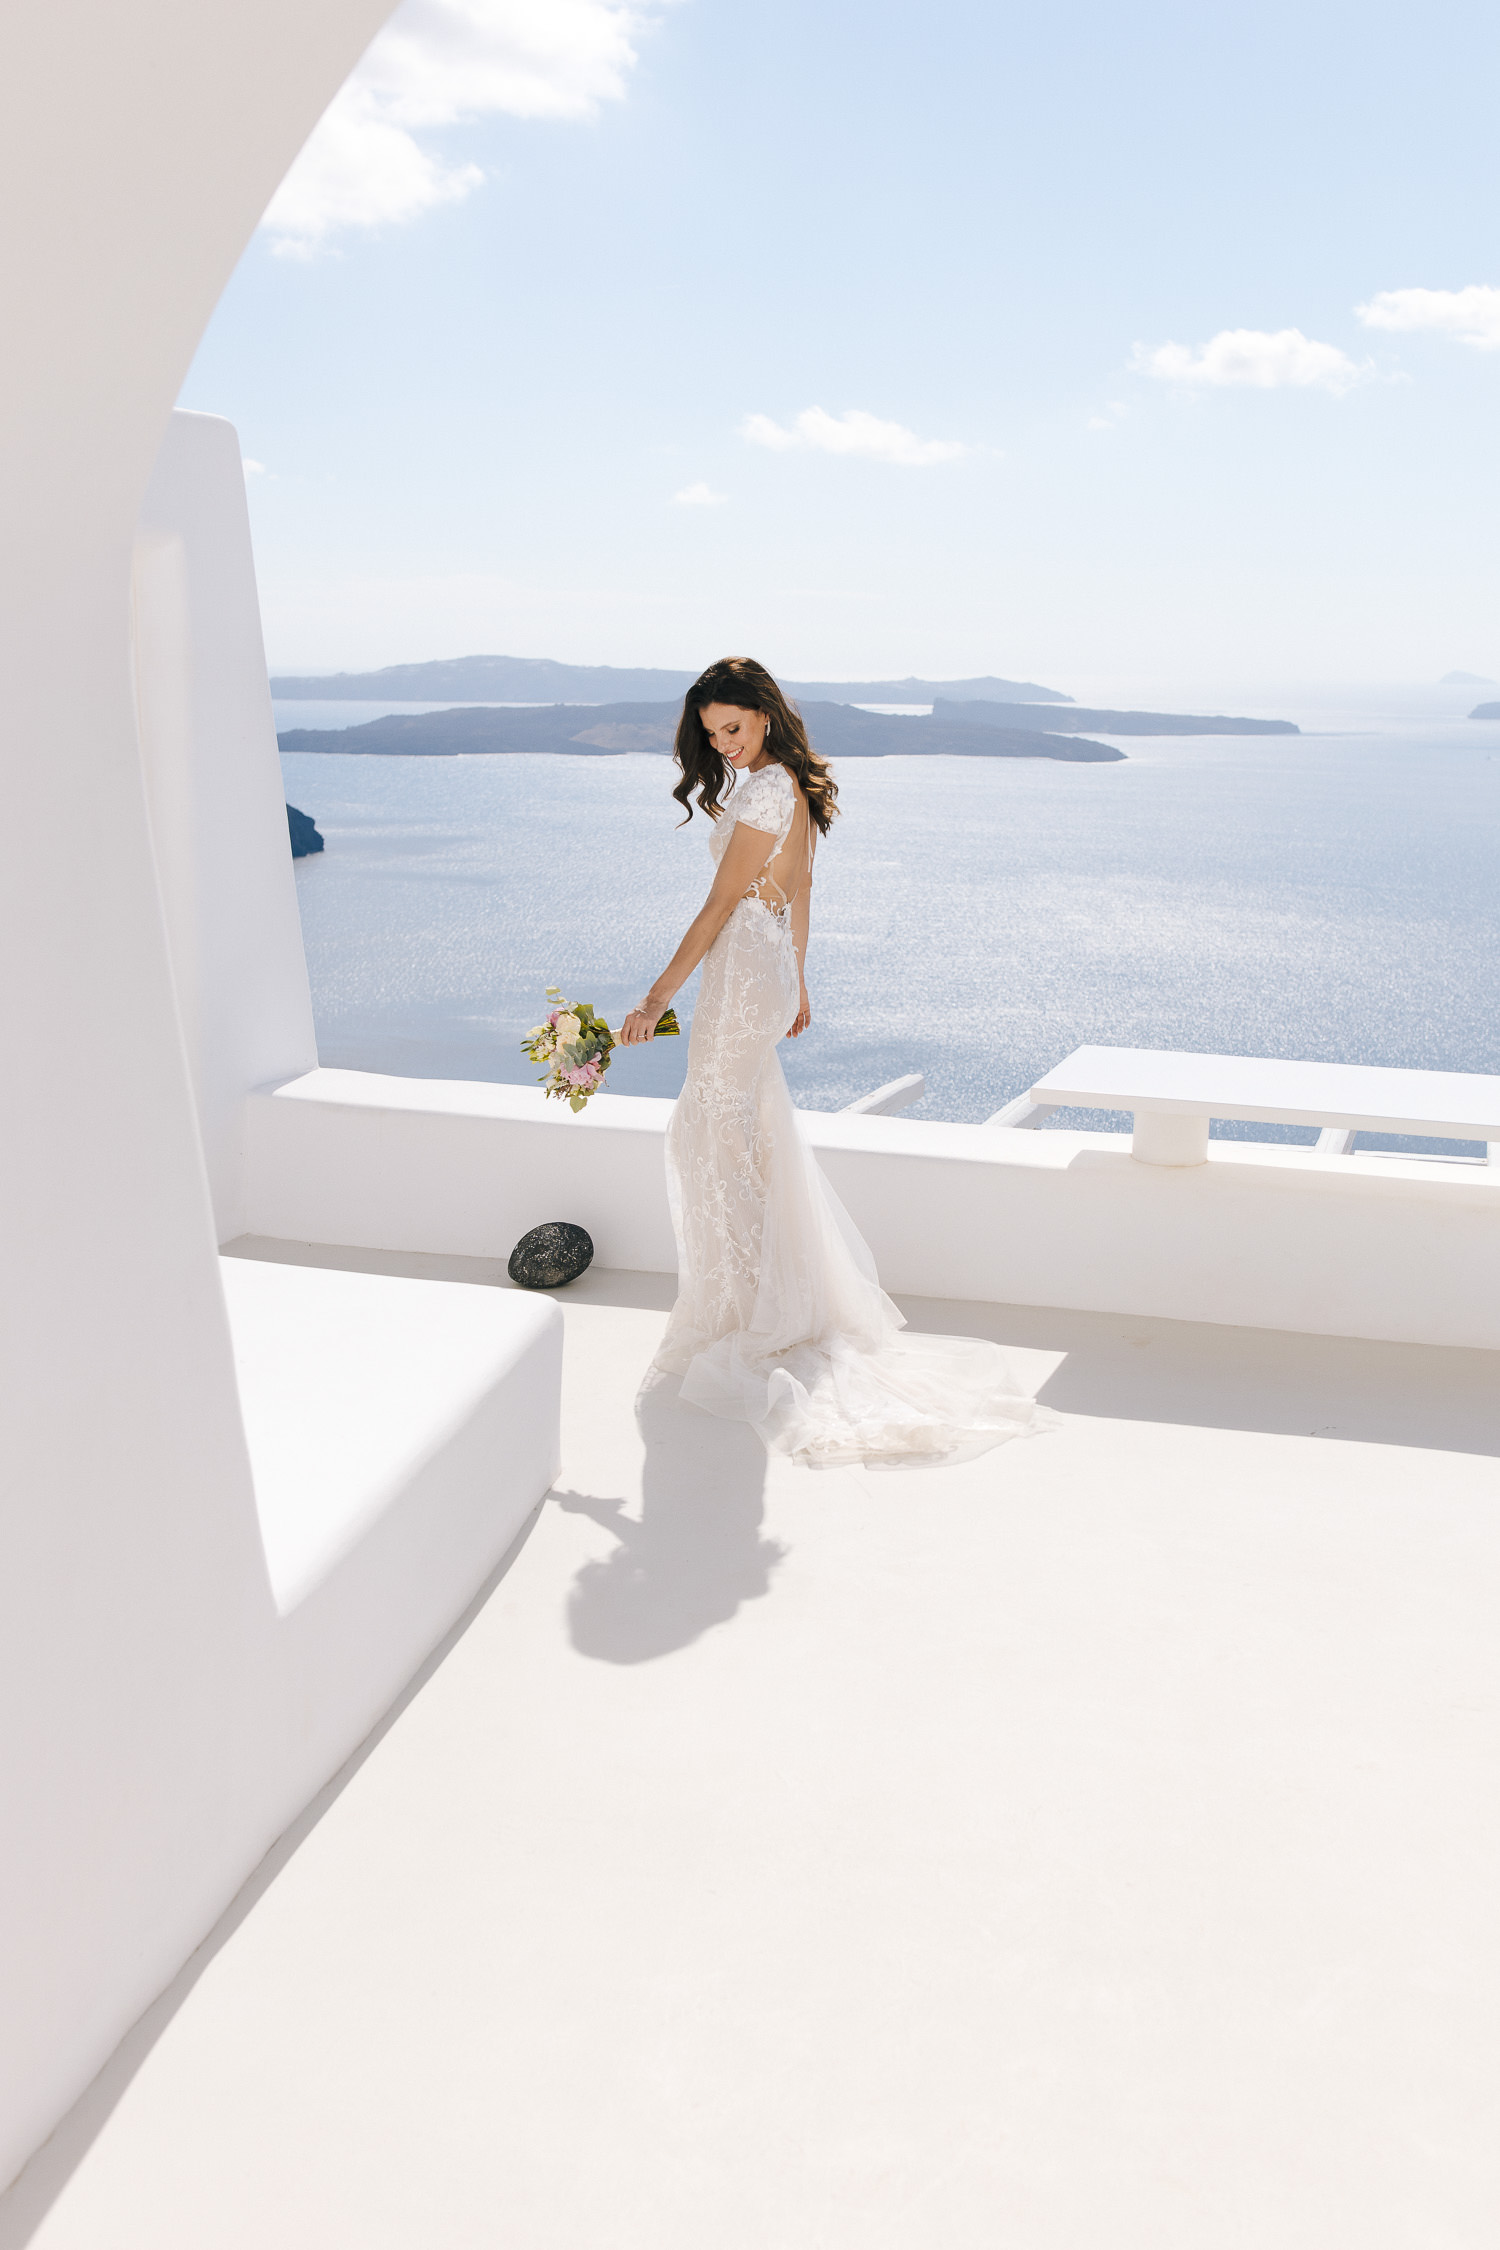 Aenaon villas Santorini wedding